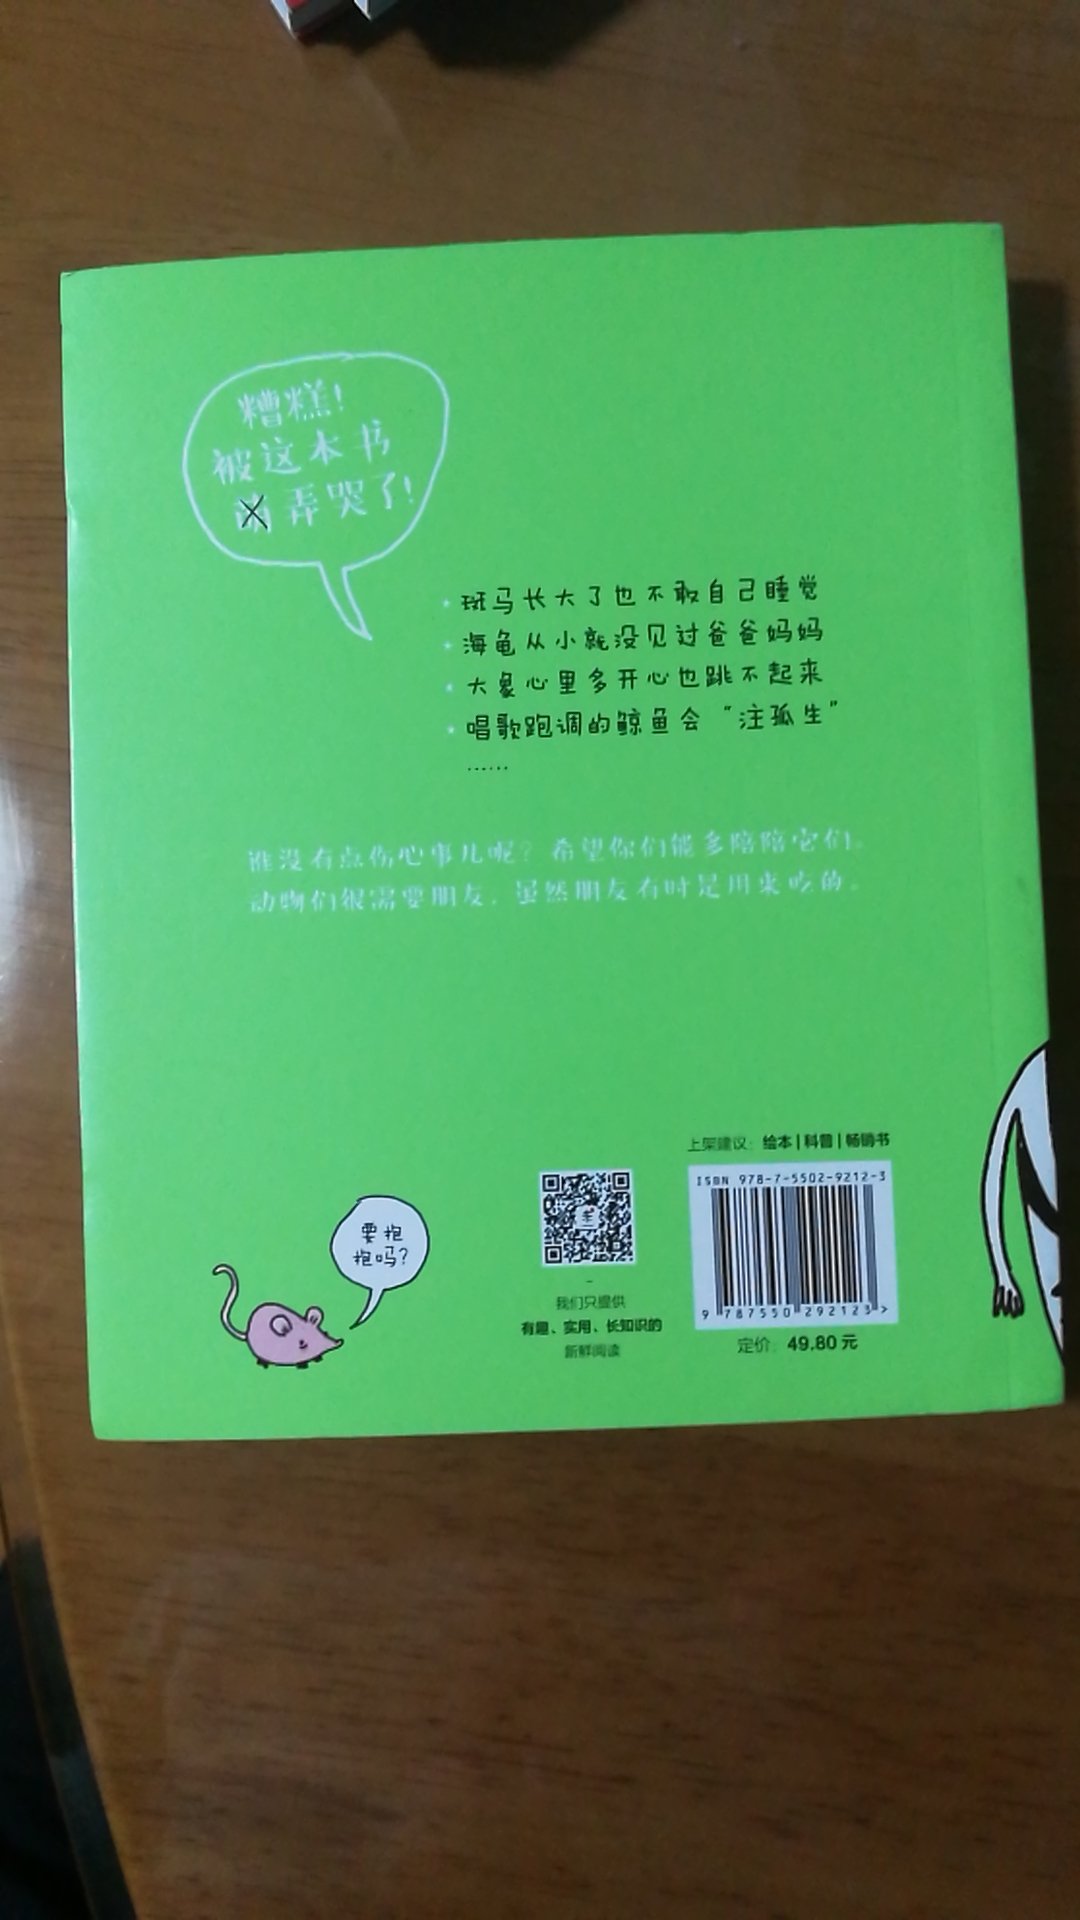 自从在南京的先锋书店看到这本书后就一直想买，赶着做活动买了好几本类似的书，小朋友知道了好多小动物的科普知识，不错。物流就是快，赞一个！